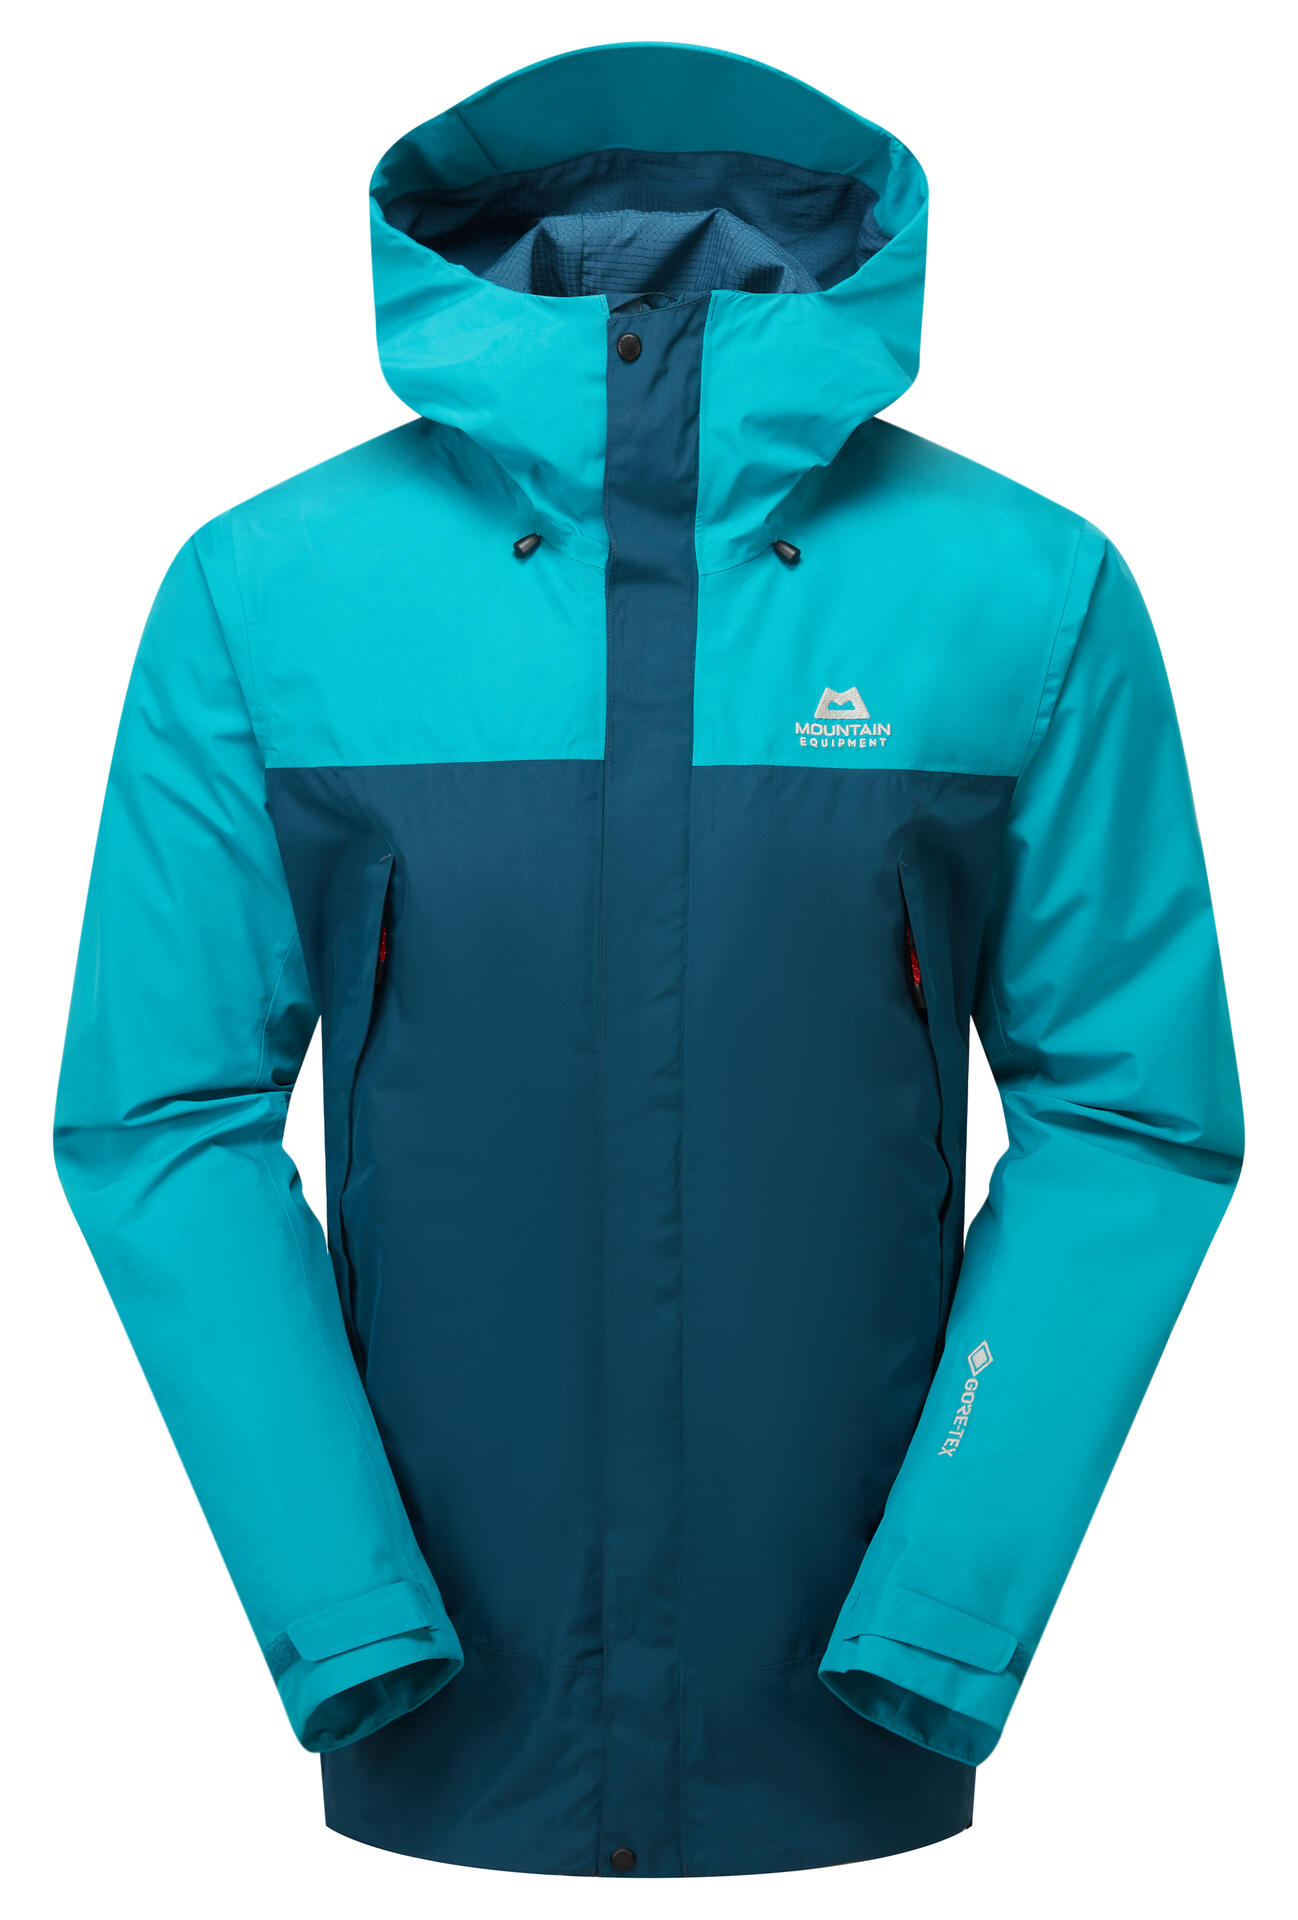 Mountain Equipment Nanda Devi Jacket Men'S Barva: Majolica Blue/Topaz, Velikost: L